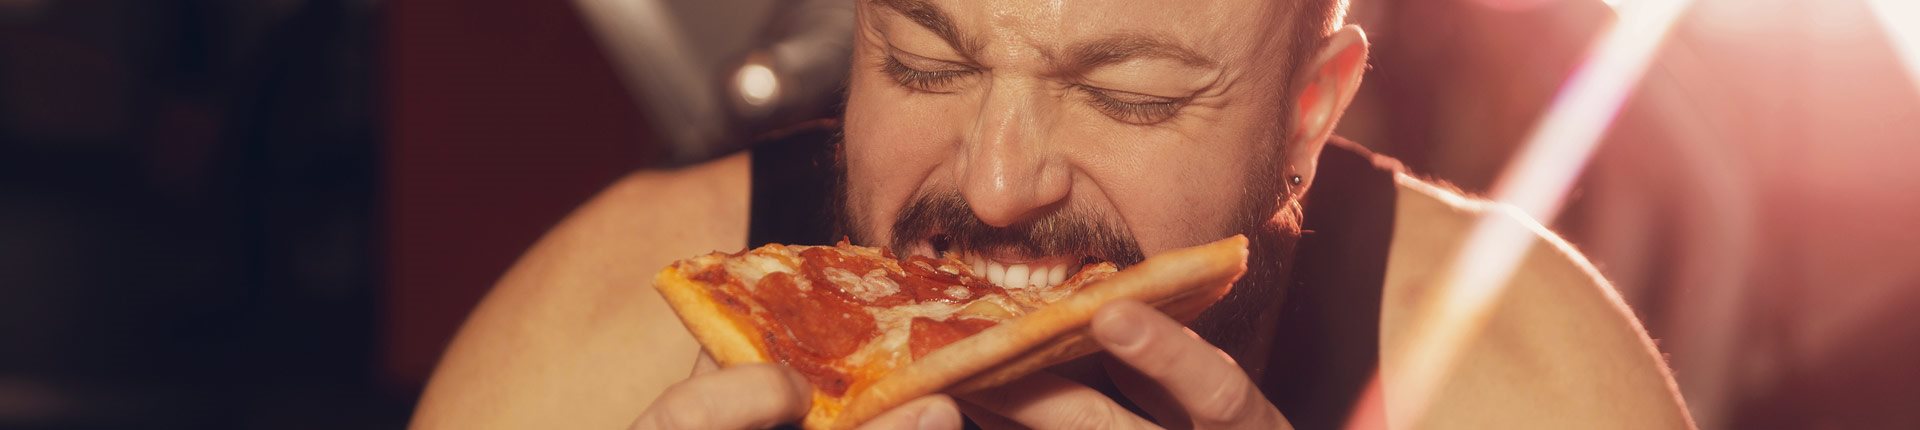 Pizza - zdrowie, odchudzanie i poziom insuliny